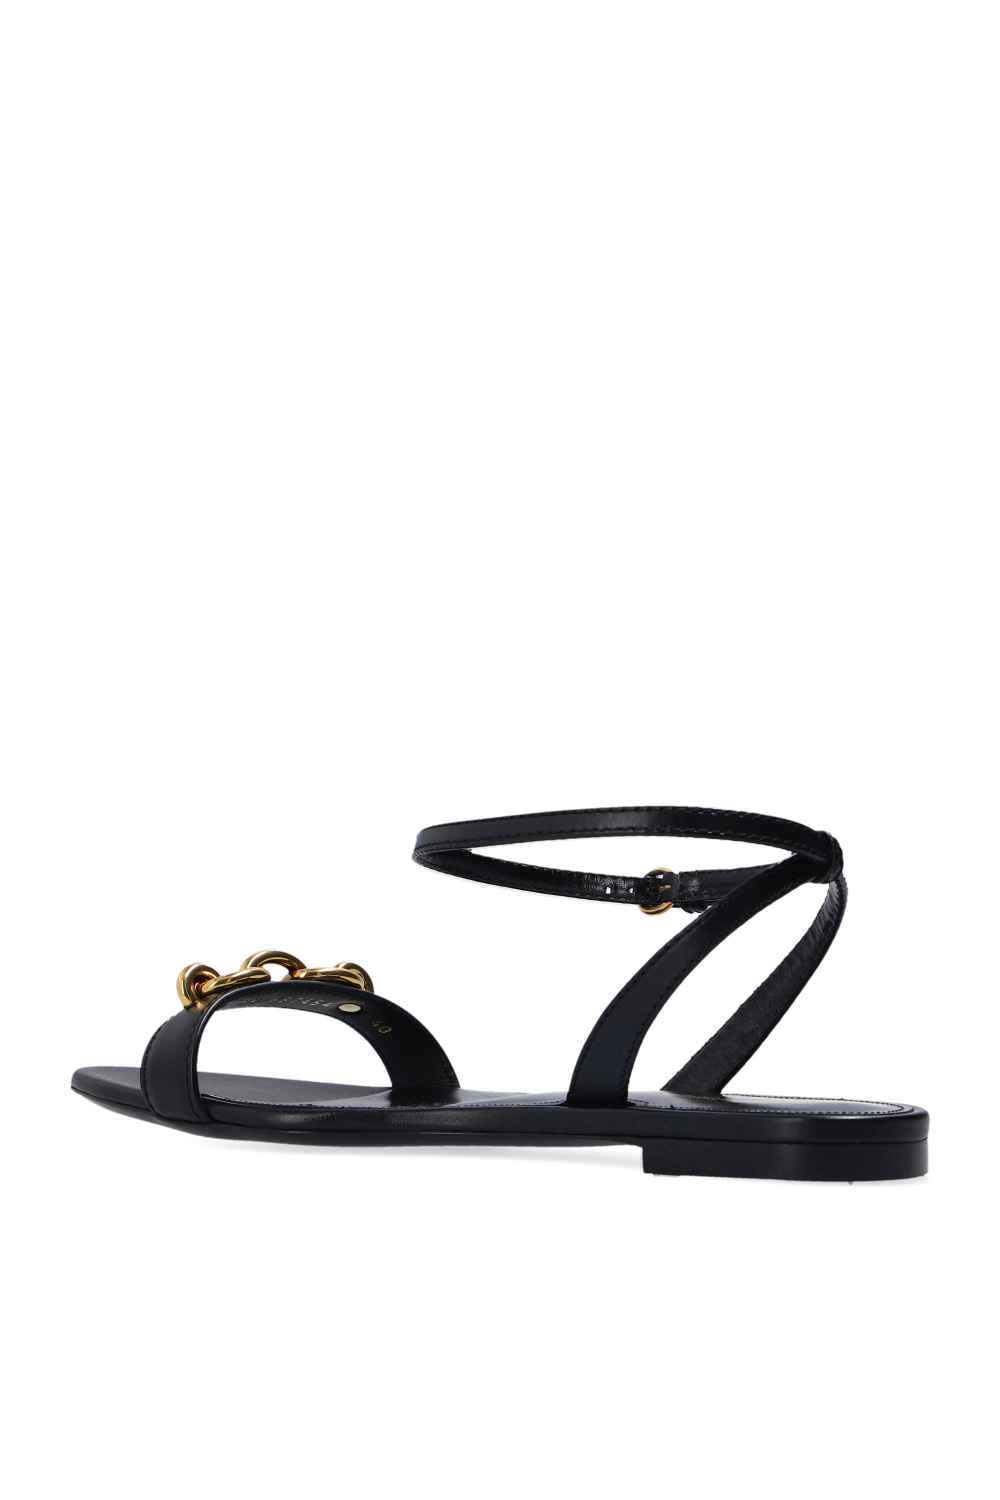 Saint Laurent ‘Maillon’ sandals